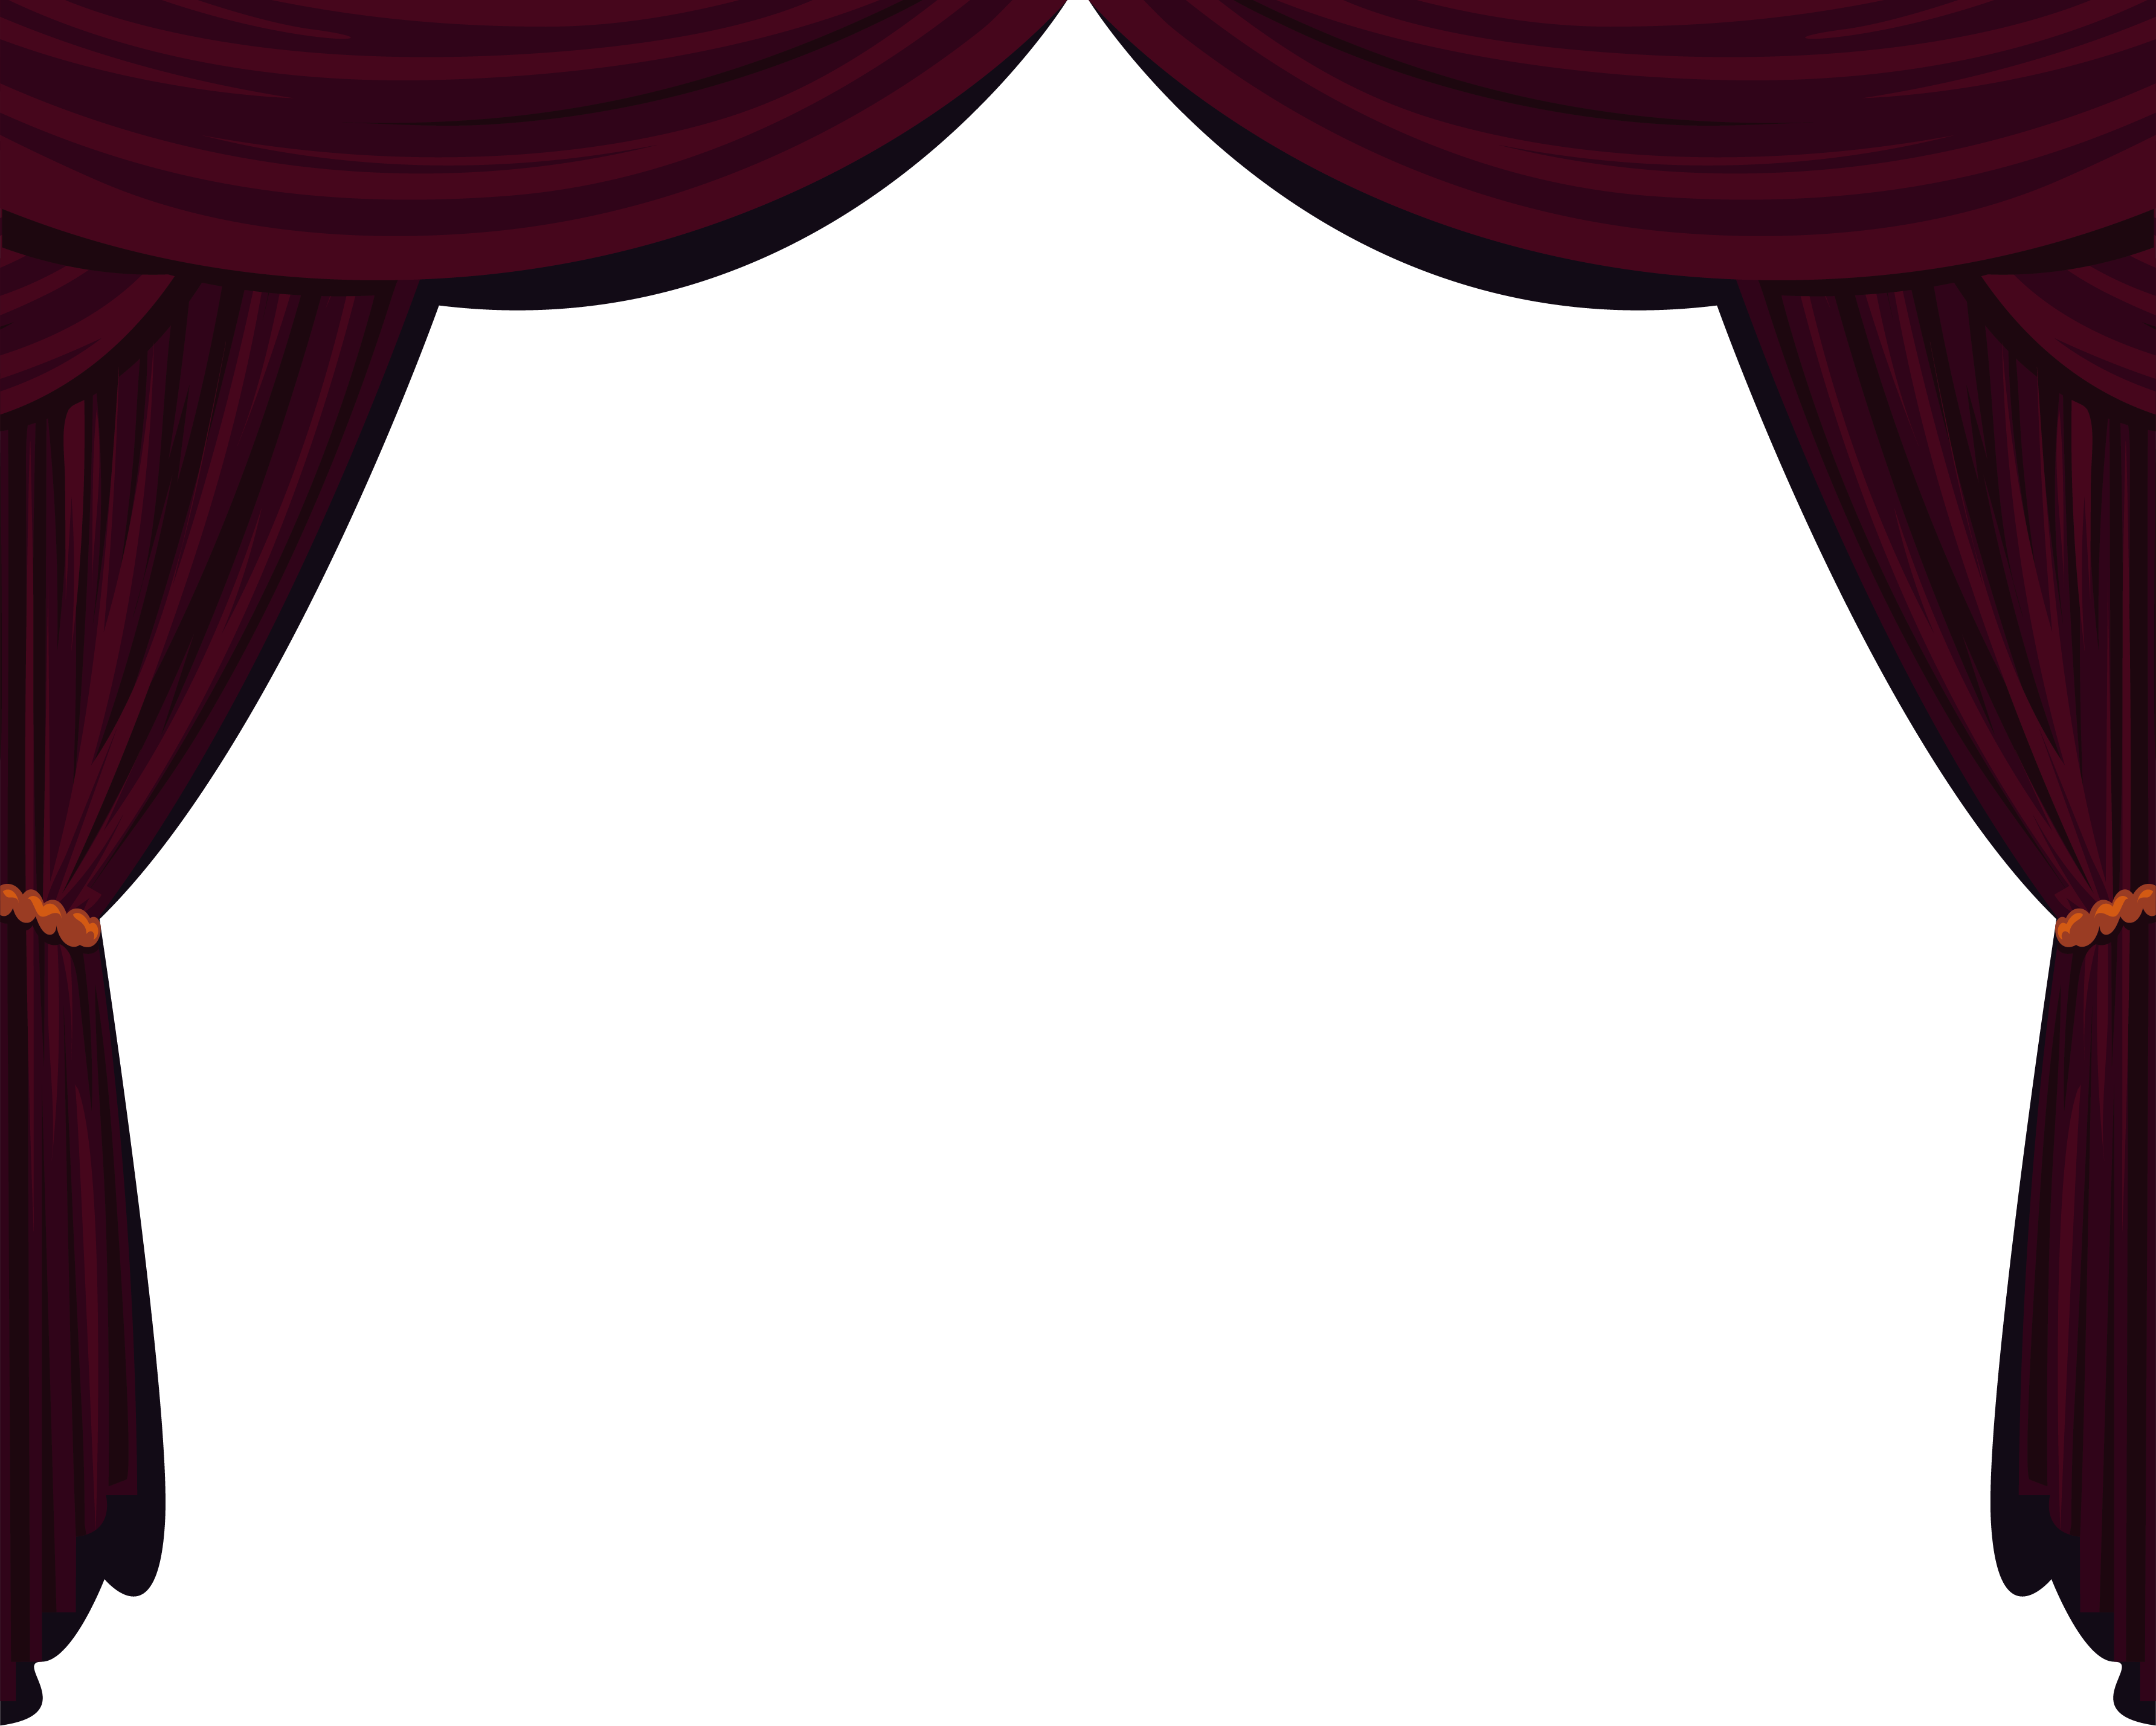 Drapes And Stage Curtains - Drapes And Stage Curtains (3569x2857)